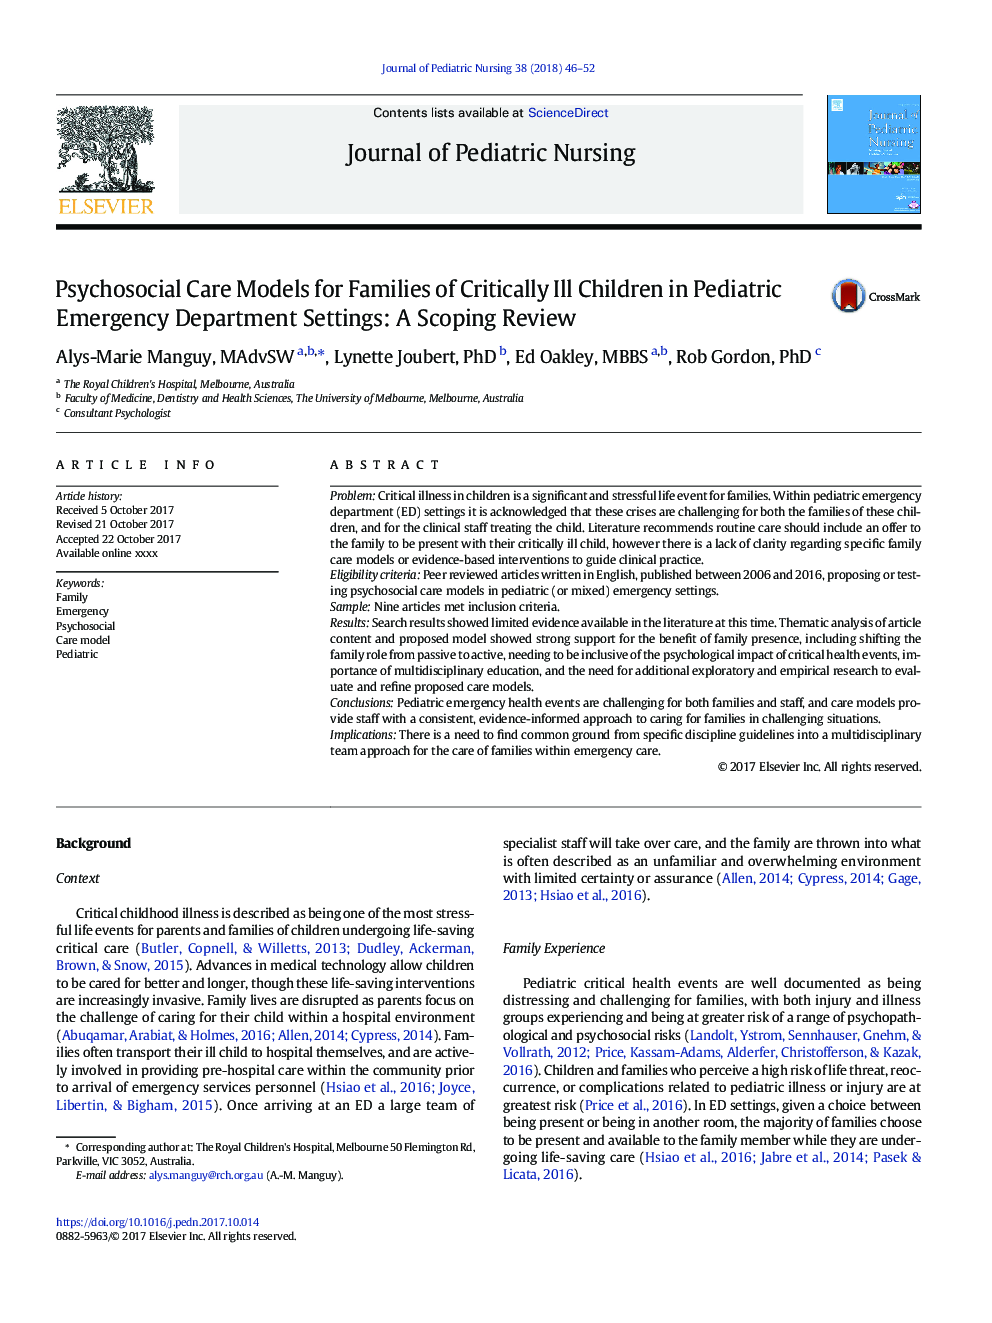 مدل های مراقبت های روانشناختی برای خانواده های کودکان مبتلا به بحرانی در بخش های اورژانس کودکان: تنظیم مقیاس 